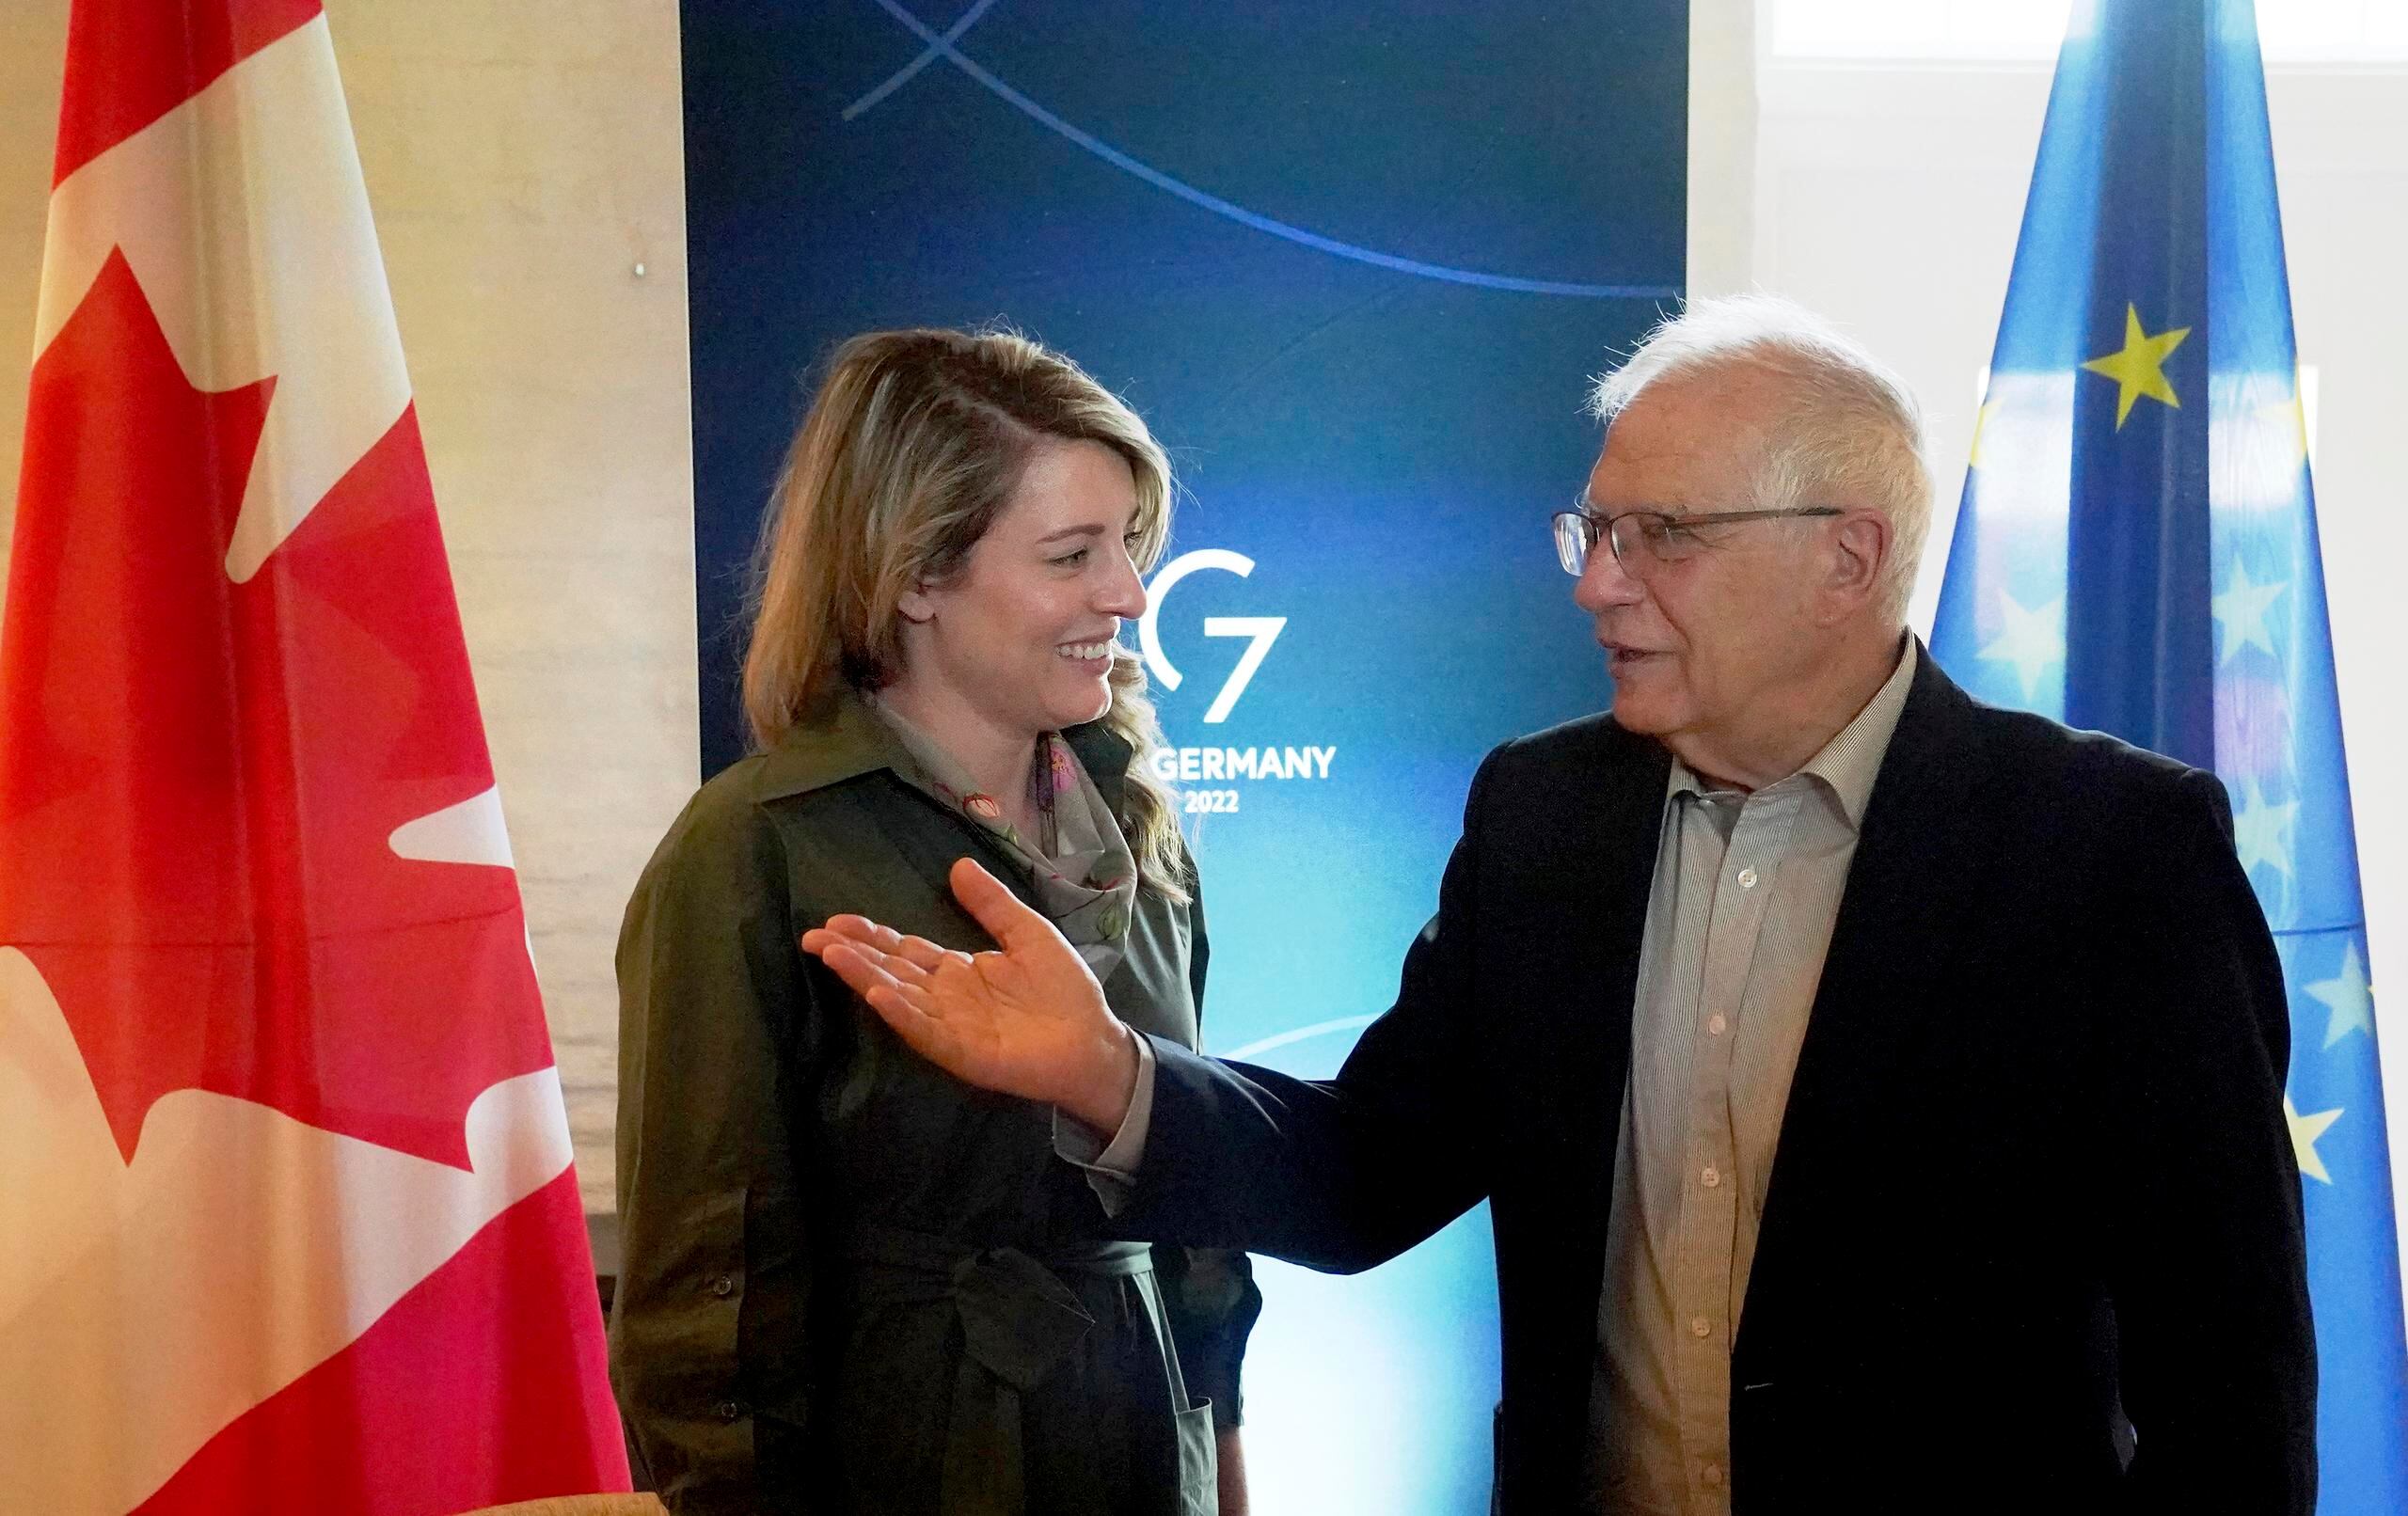 Melanie Joly, ministra de Exteriores de Canadá, y Josep Borrell, alto representante de Asuntos Exteriores de la UE, hablan durante una reunión bilateral en el marco de una cumbre de ministros de Exteriores del G7 en Weissenhaeuser Strand, Alemania, el 14 de mayo de 2022.